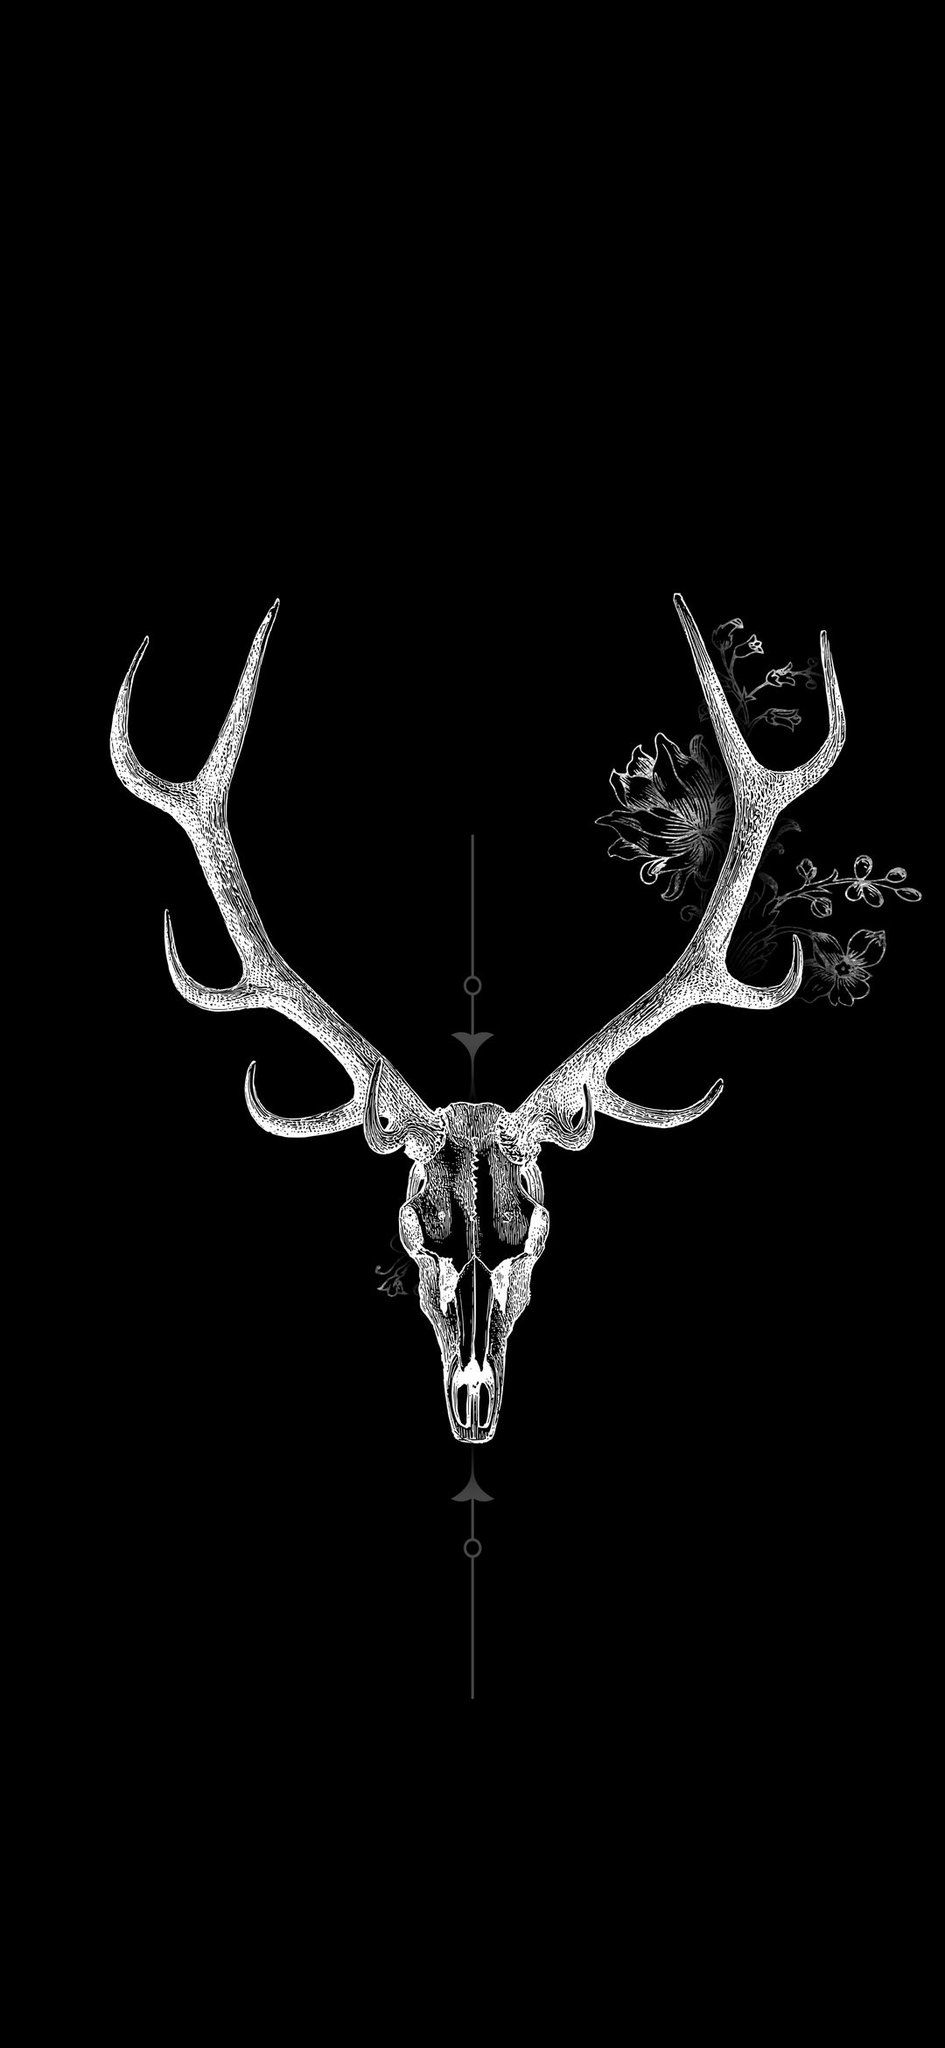 IPhone wallpaper with a deer skull - Deer